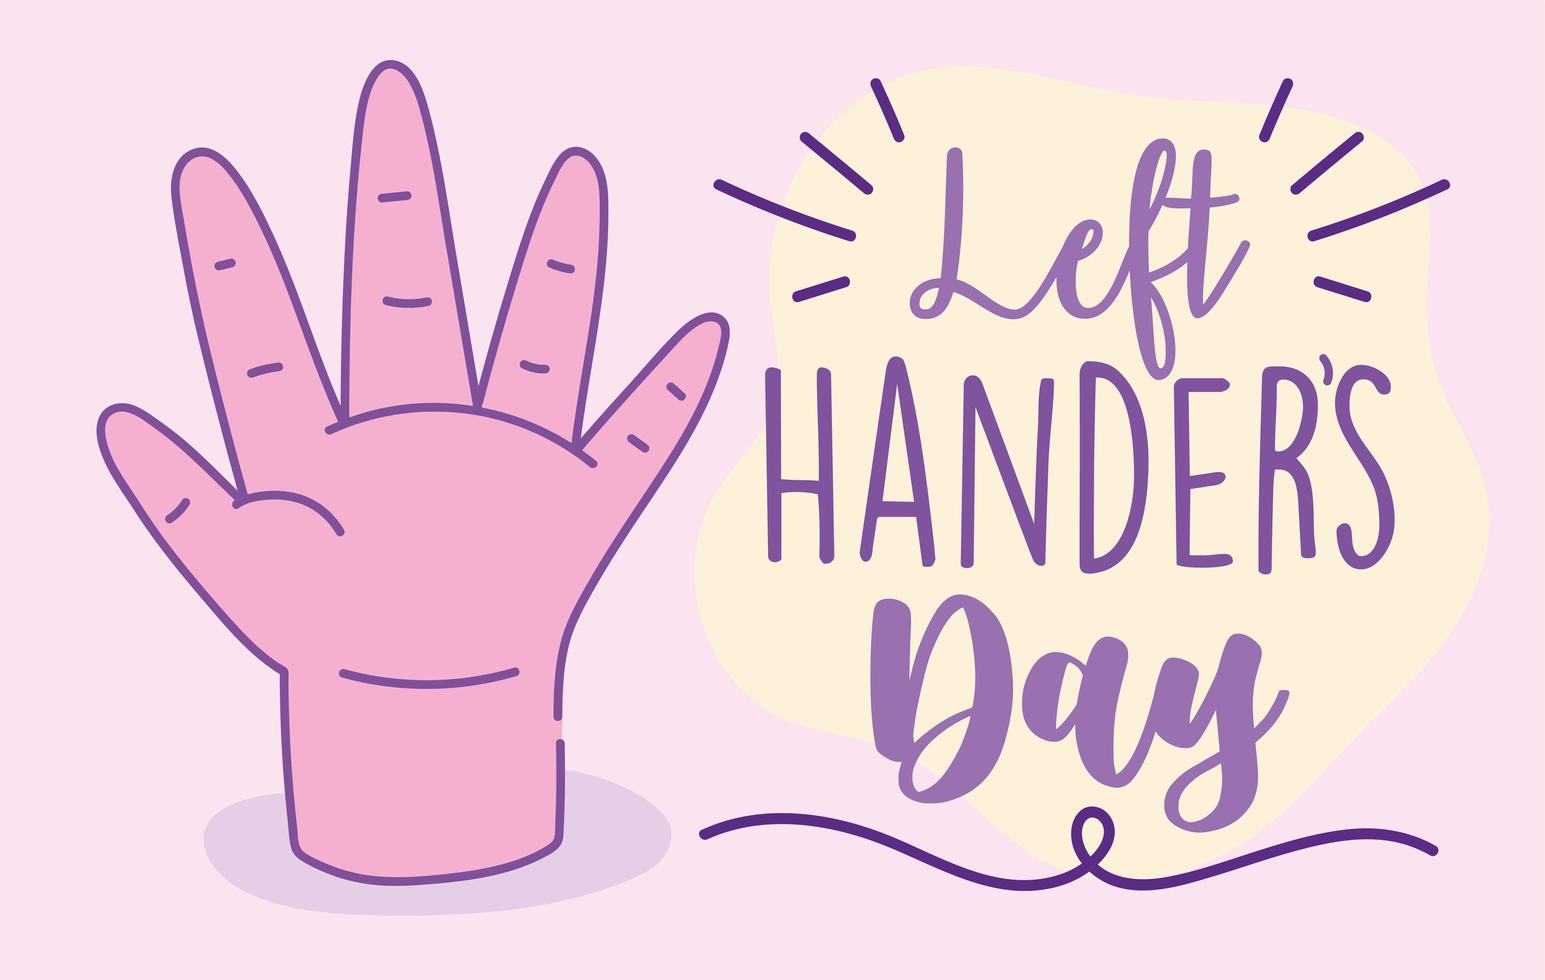 linkshandigen dag poster met roze hand vector